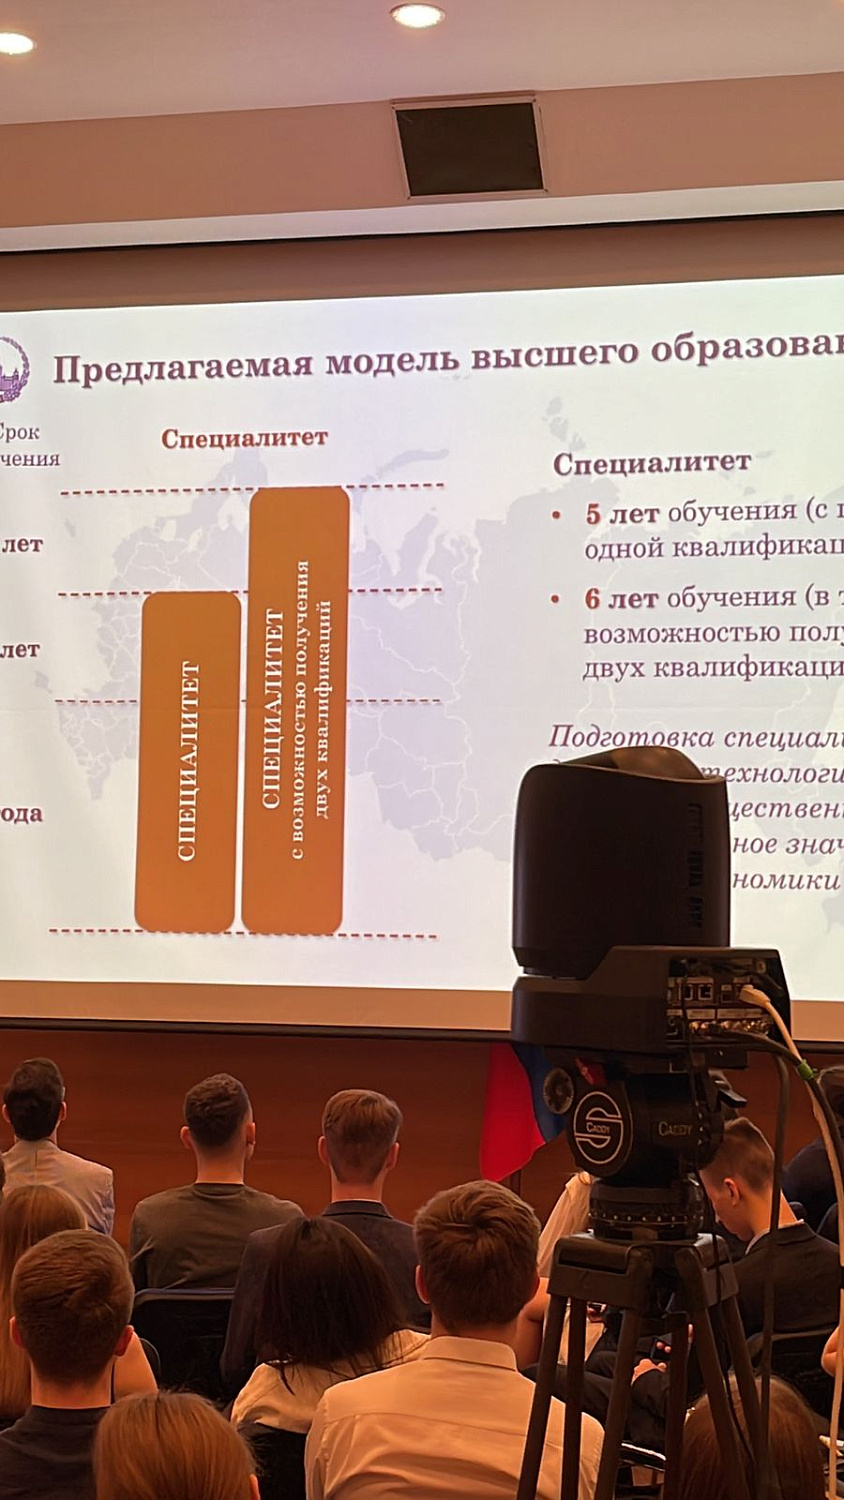 Развитие системы высшего образования в России